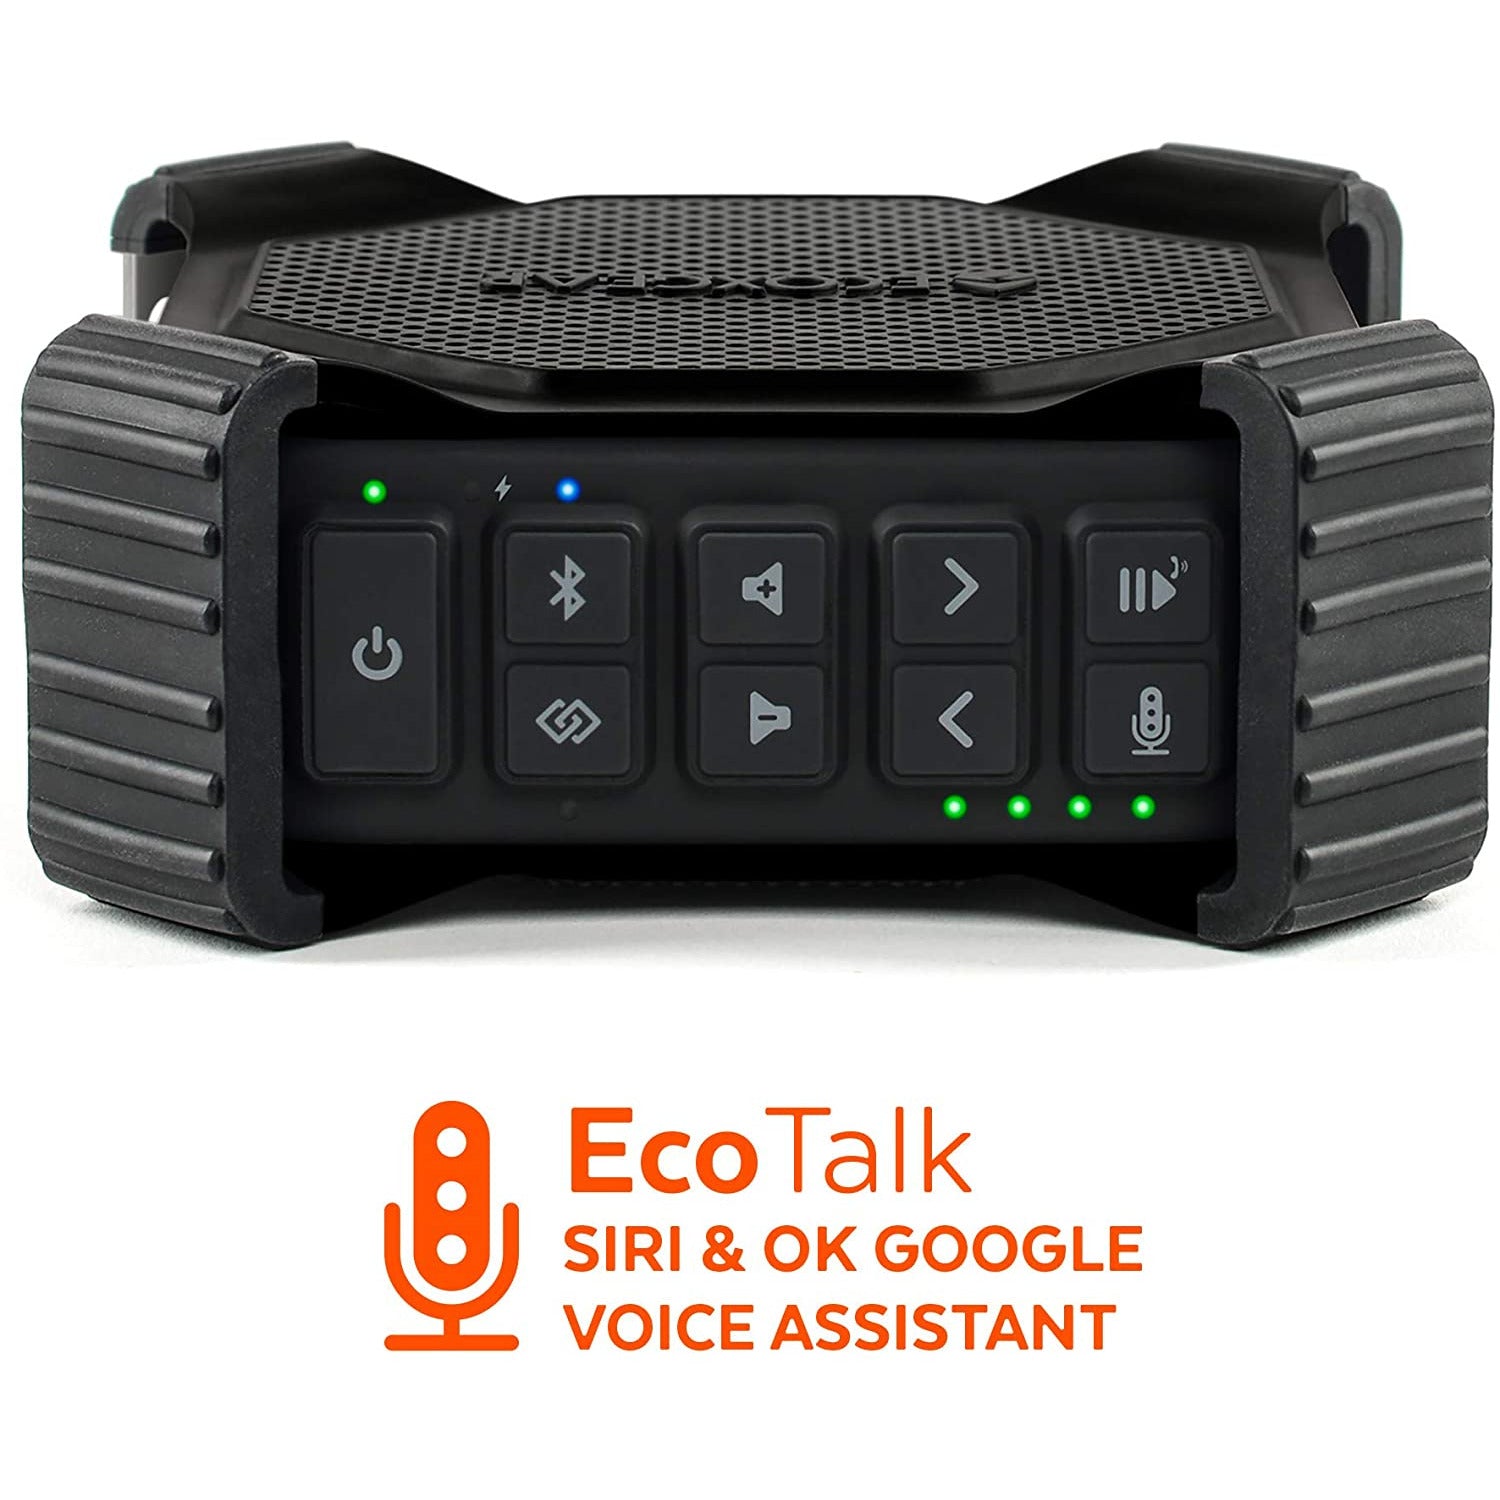 Eco edge voice assistant 